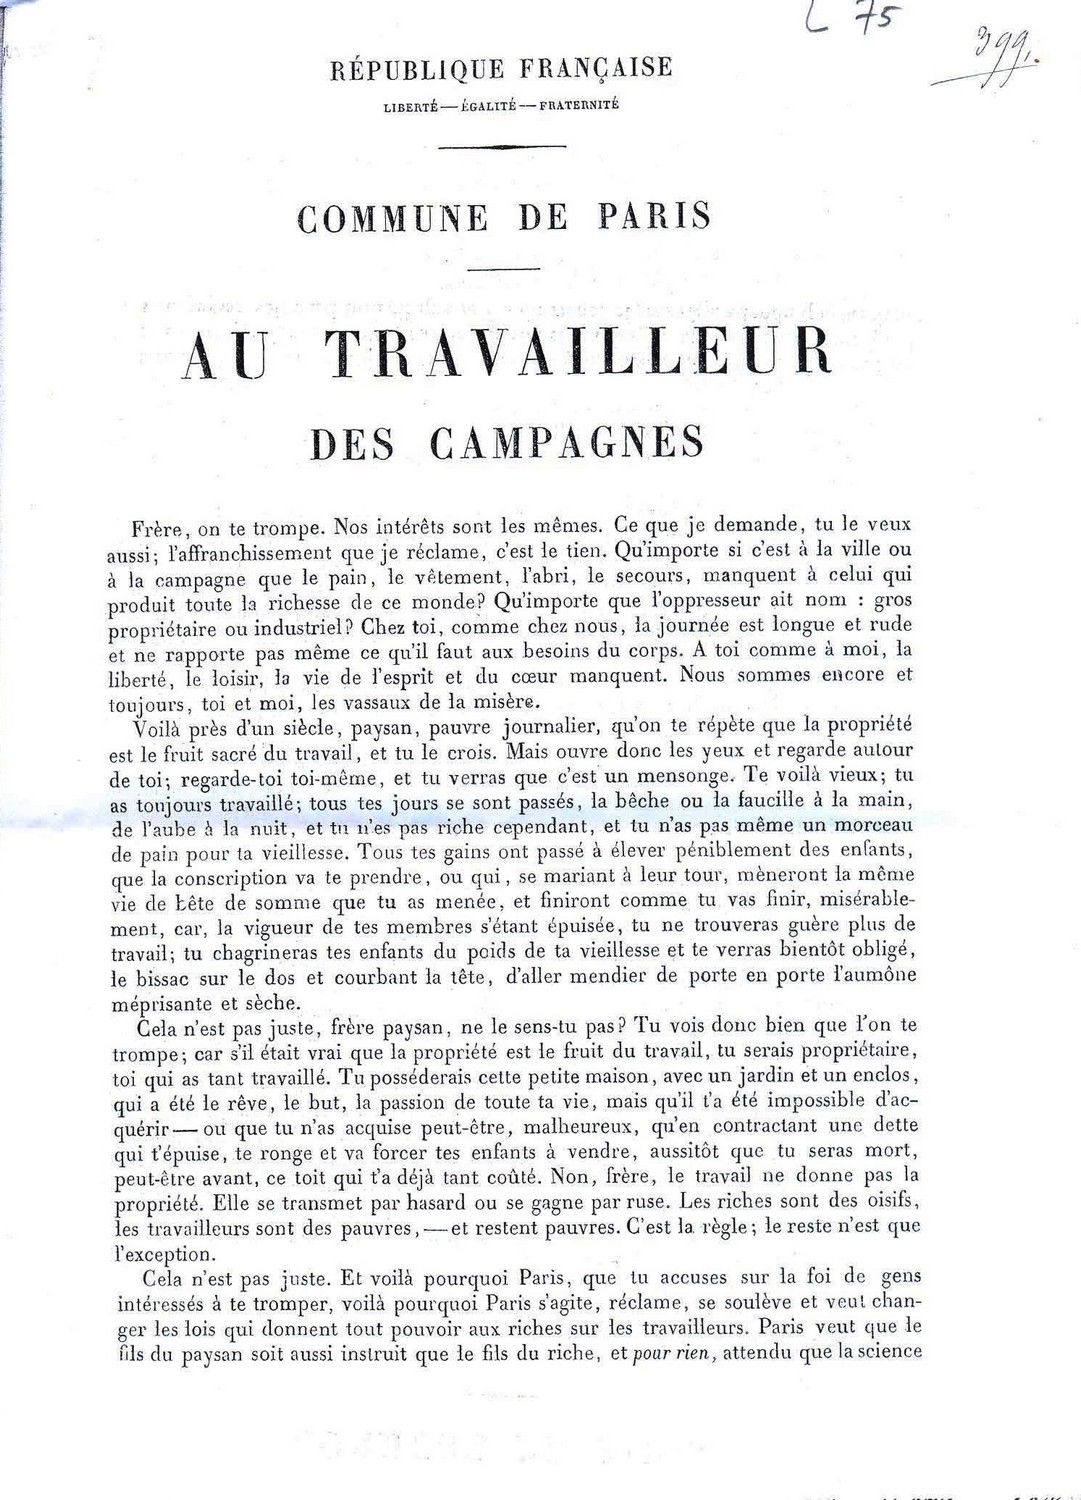 Tract "Appel aux travailleurs des campagnes", publié dans "La Commune" du 10 avril 1871 (1ère partie)